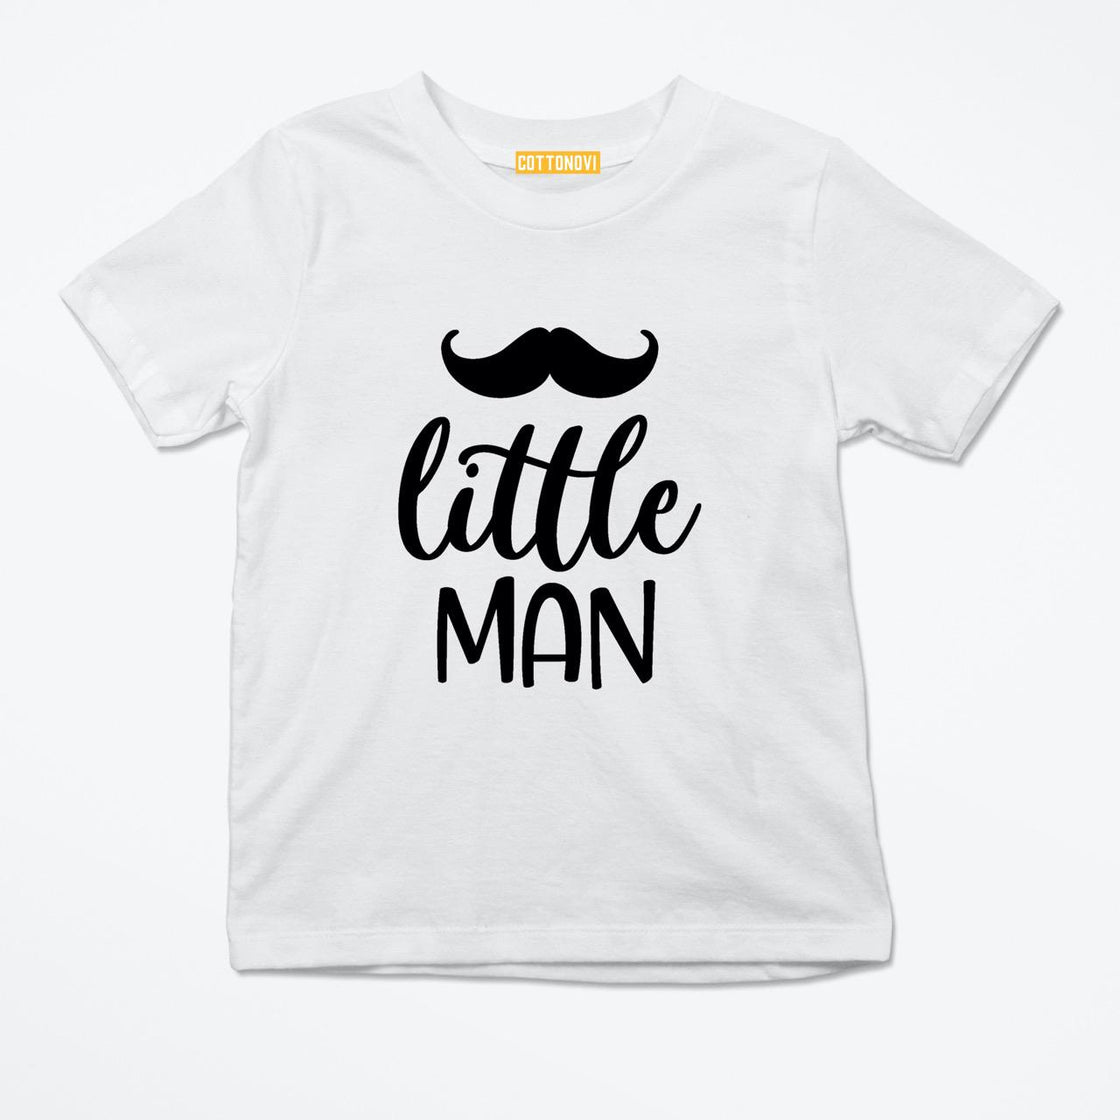 Little Man T-shirt